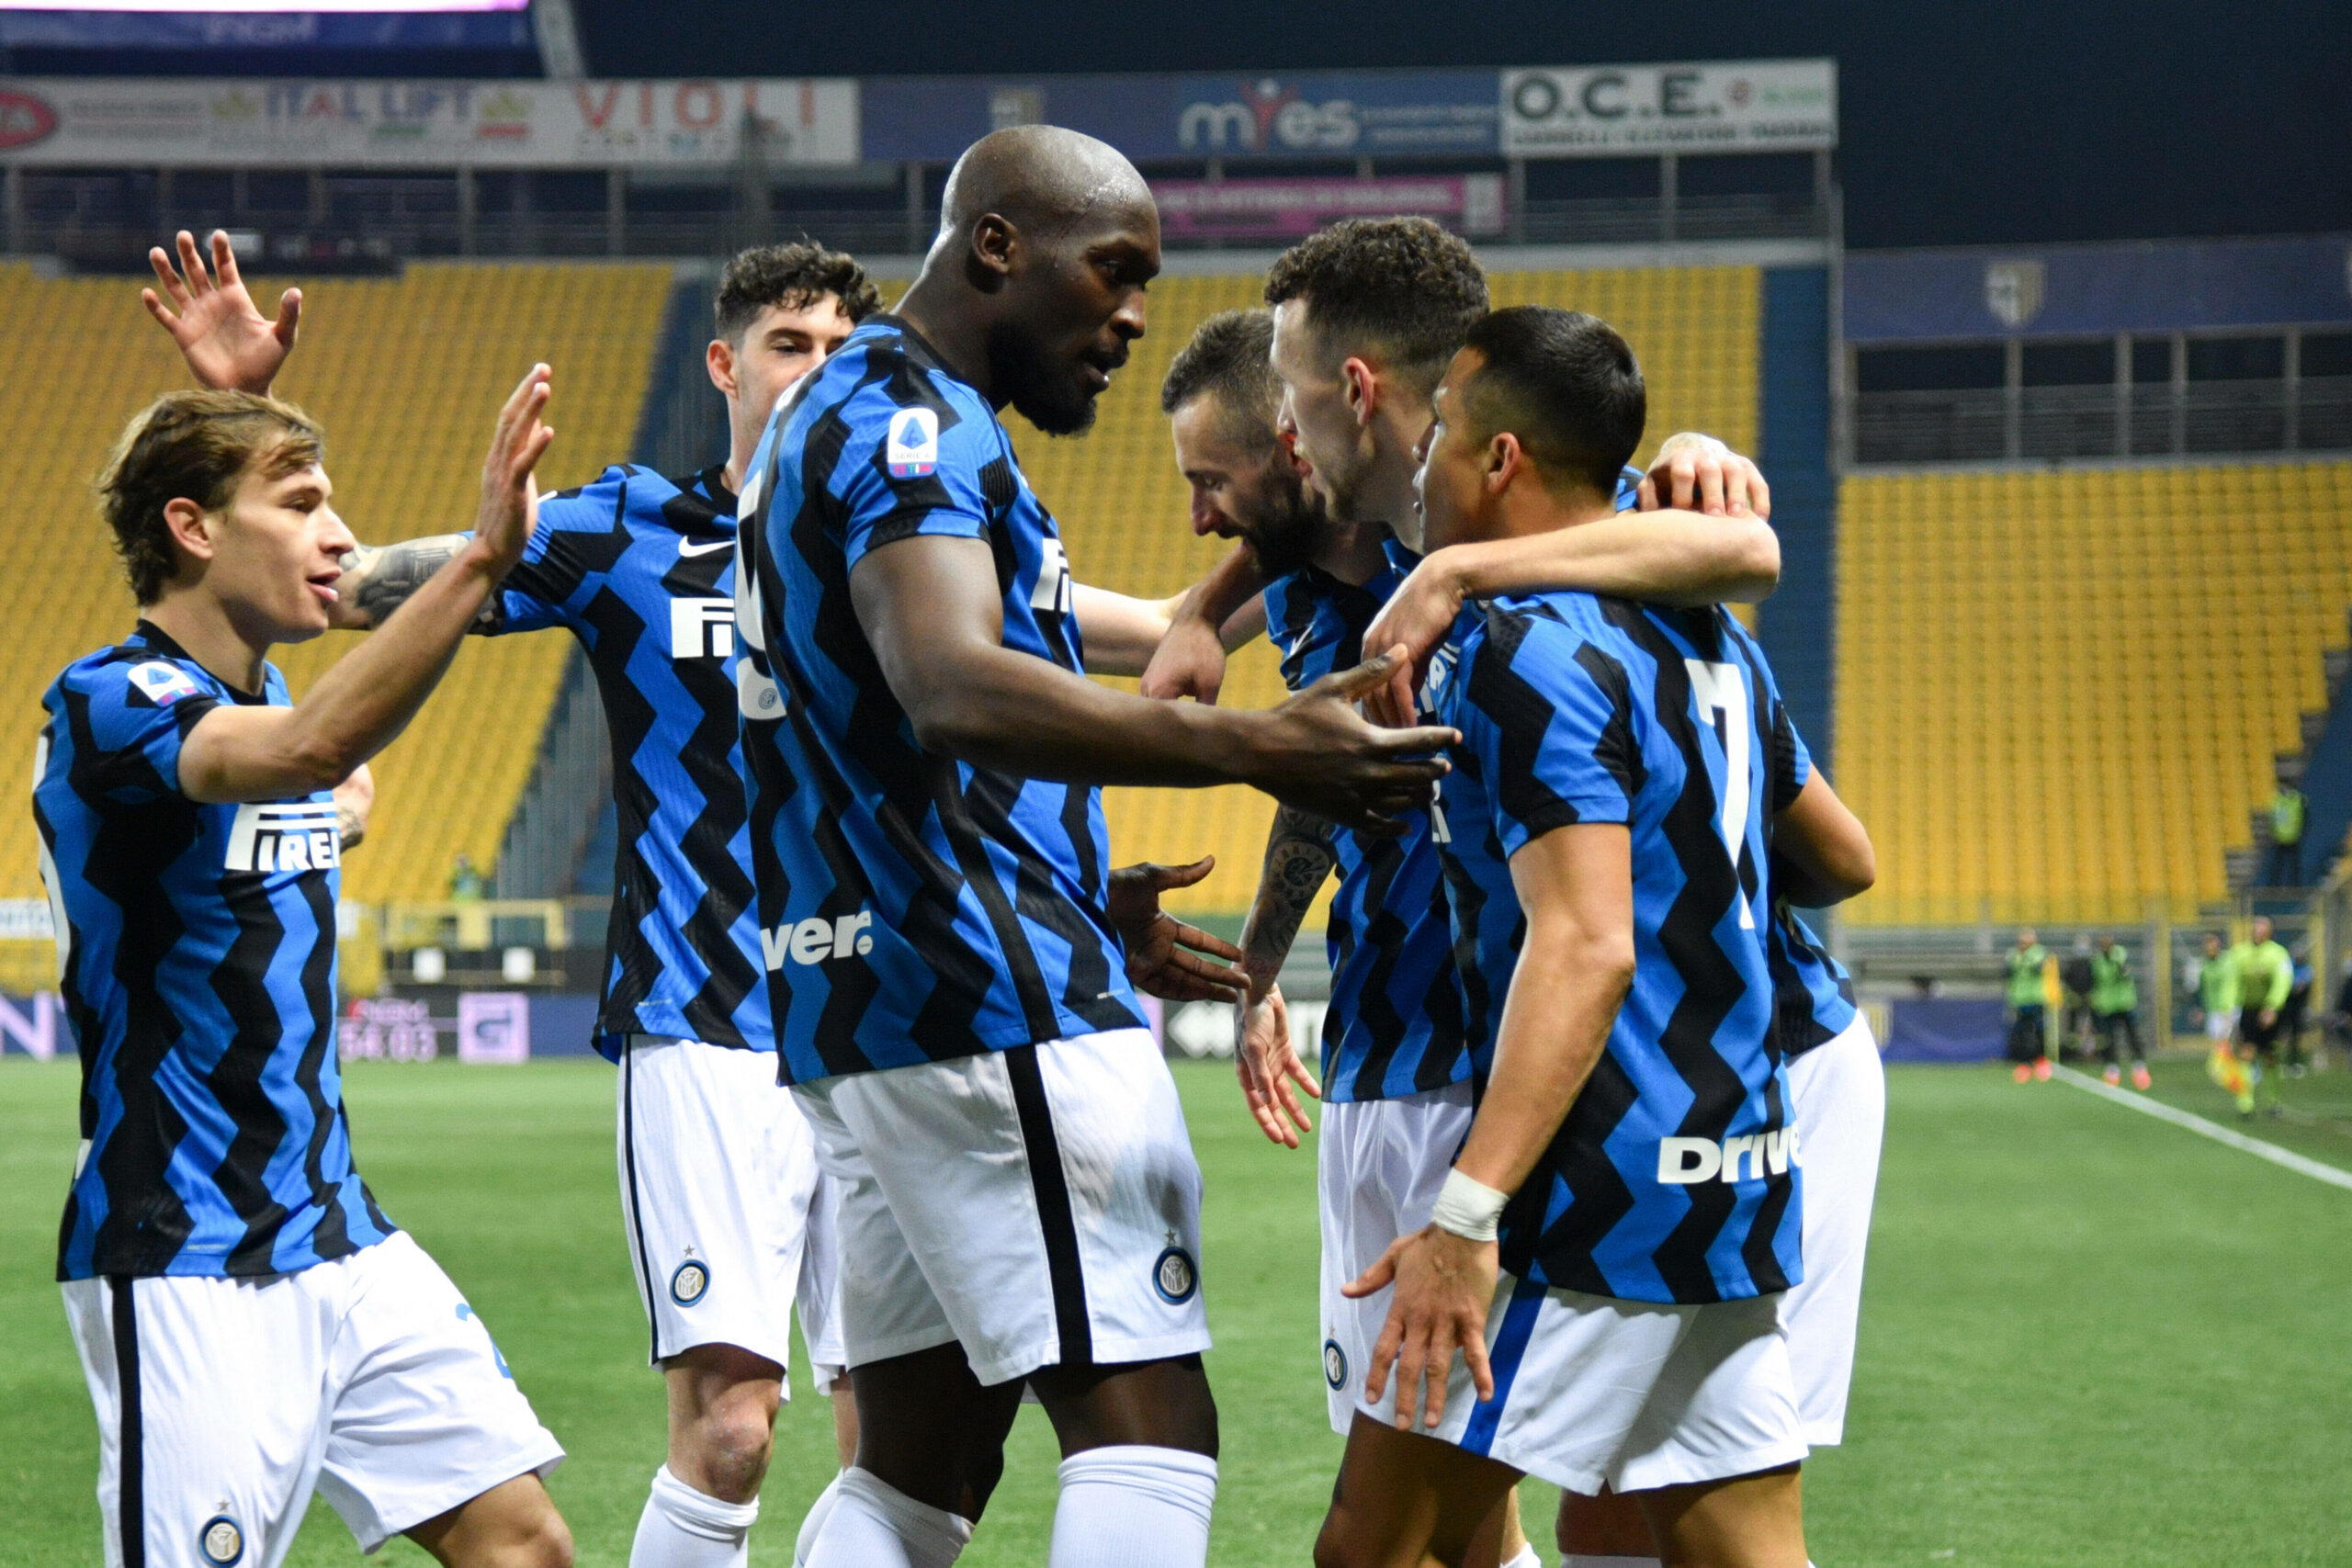 Inter vs Atalanta: Offensivpower en masse im Spitzenspiel der Serie A